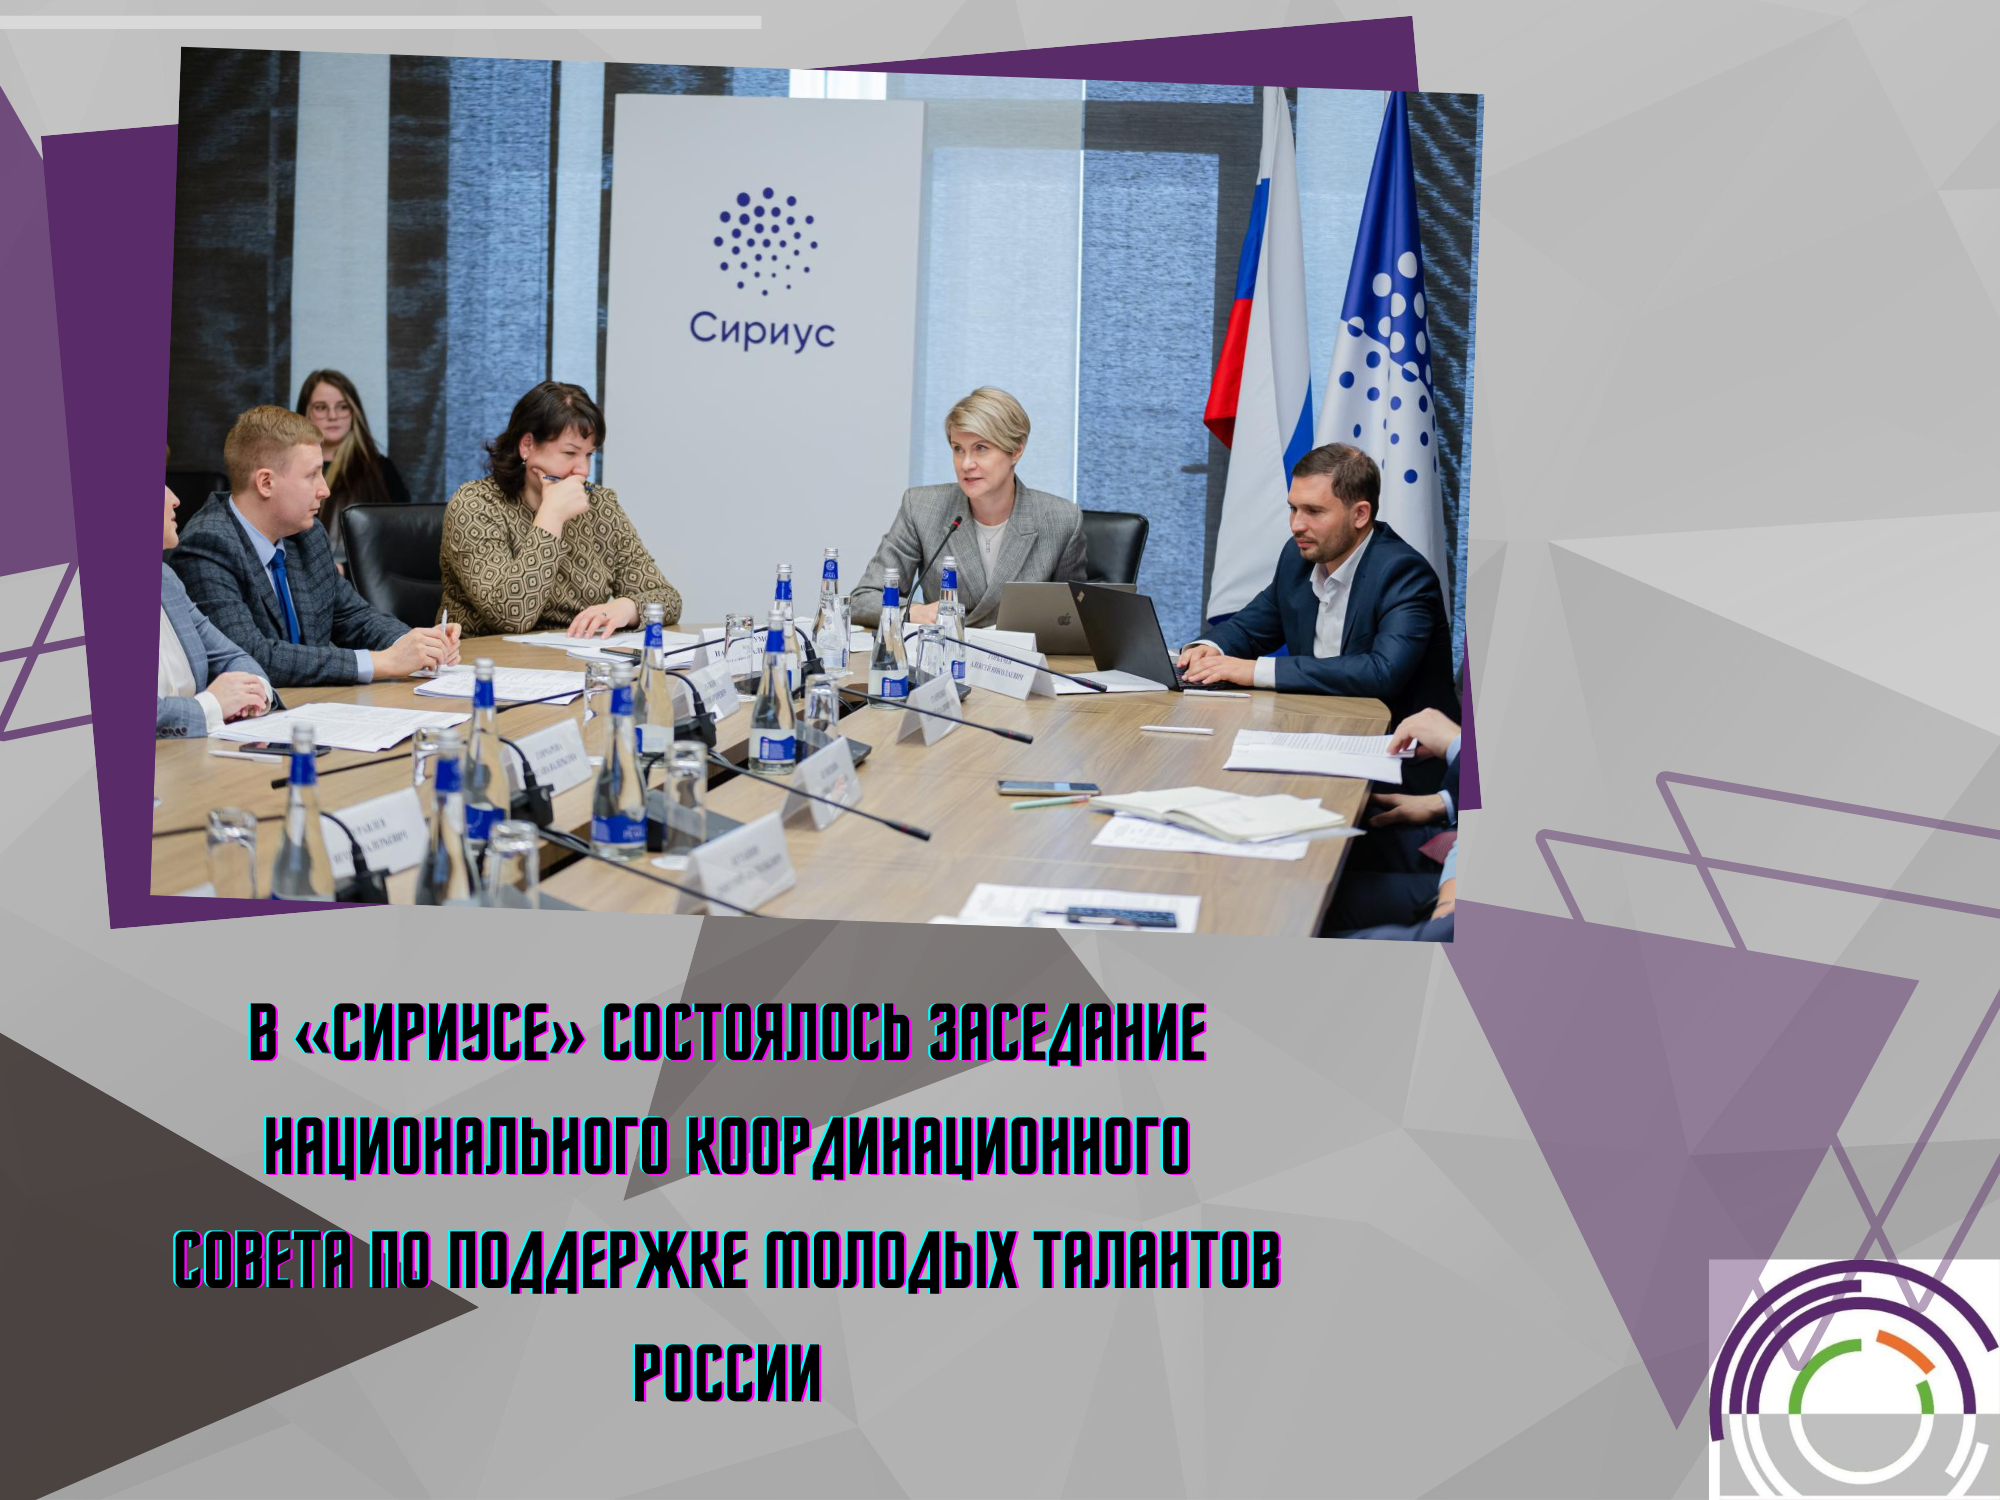 В «Сириусе» состоялось заседание национального координационного совета по поддержке молодых талантов России